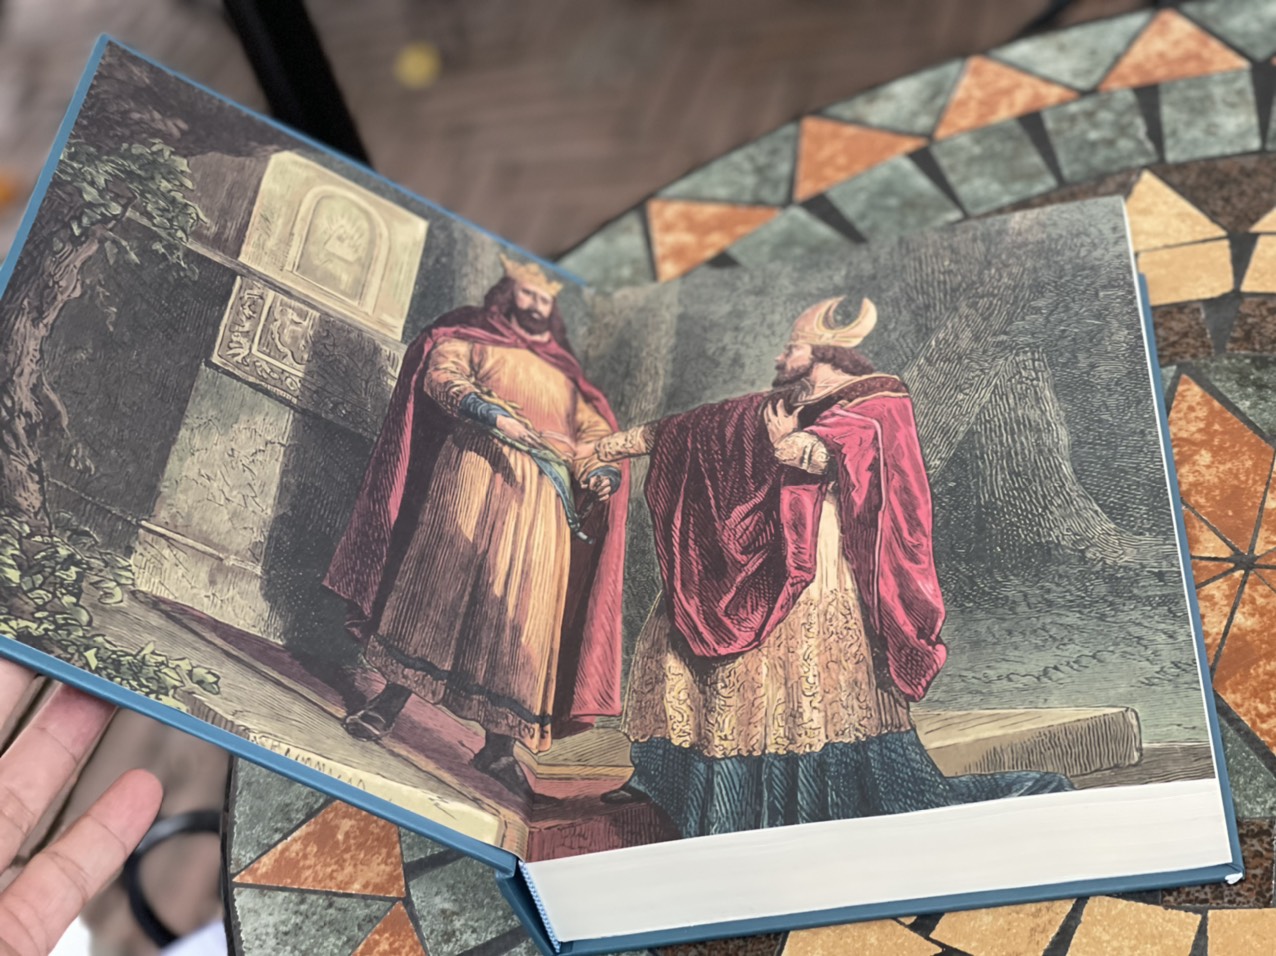 (Bìa cứng tặng 1 bookmark và 1 postcard) – CHIẾN HỮU CỦA JEHU – Alexandre Dumas – Anh Đức dịch - Phúc Minh Books – NXB Văn Học